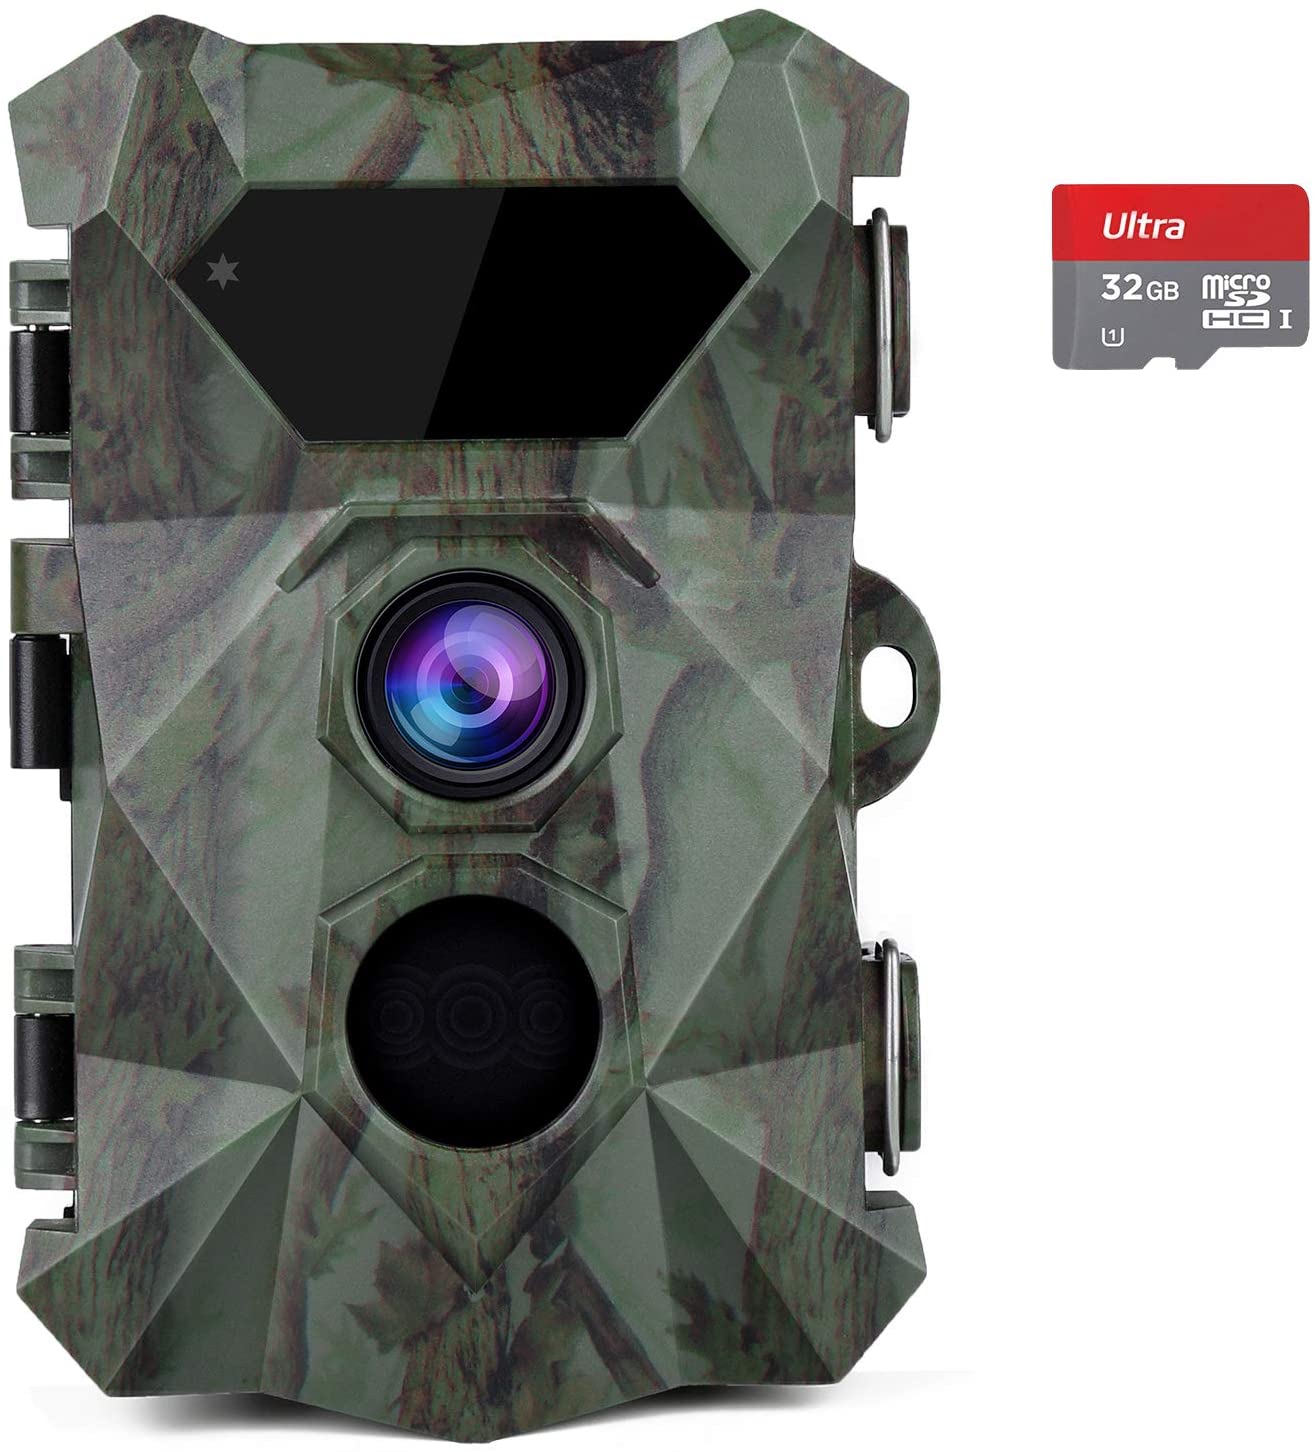 COOLIFE H953 Wildkamera 2.7K 20MP Wildkamera mit Bewegungsmelder Nachtsicht 0,1s Schnelle Trigger Geschwindigkeit 46 pcs 850nm/940nm IR LEDs Jagdkamera mit 32G Speicherkarte